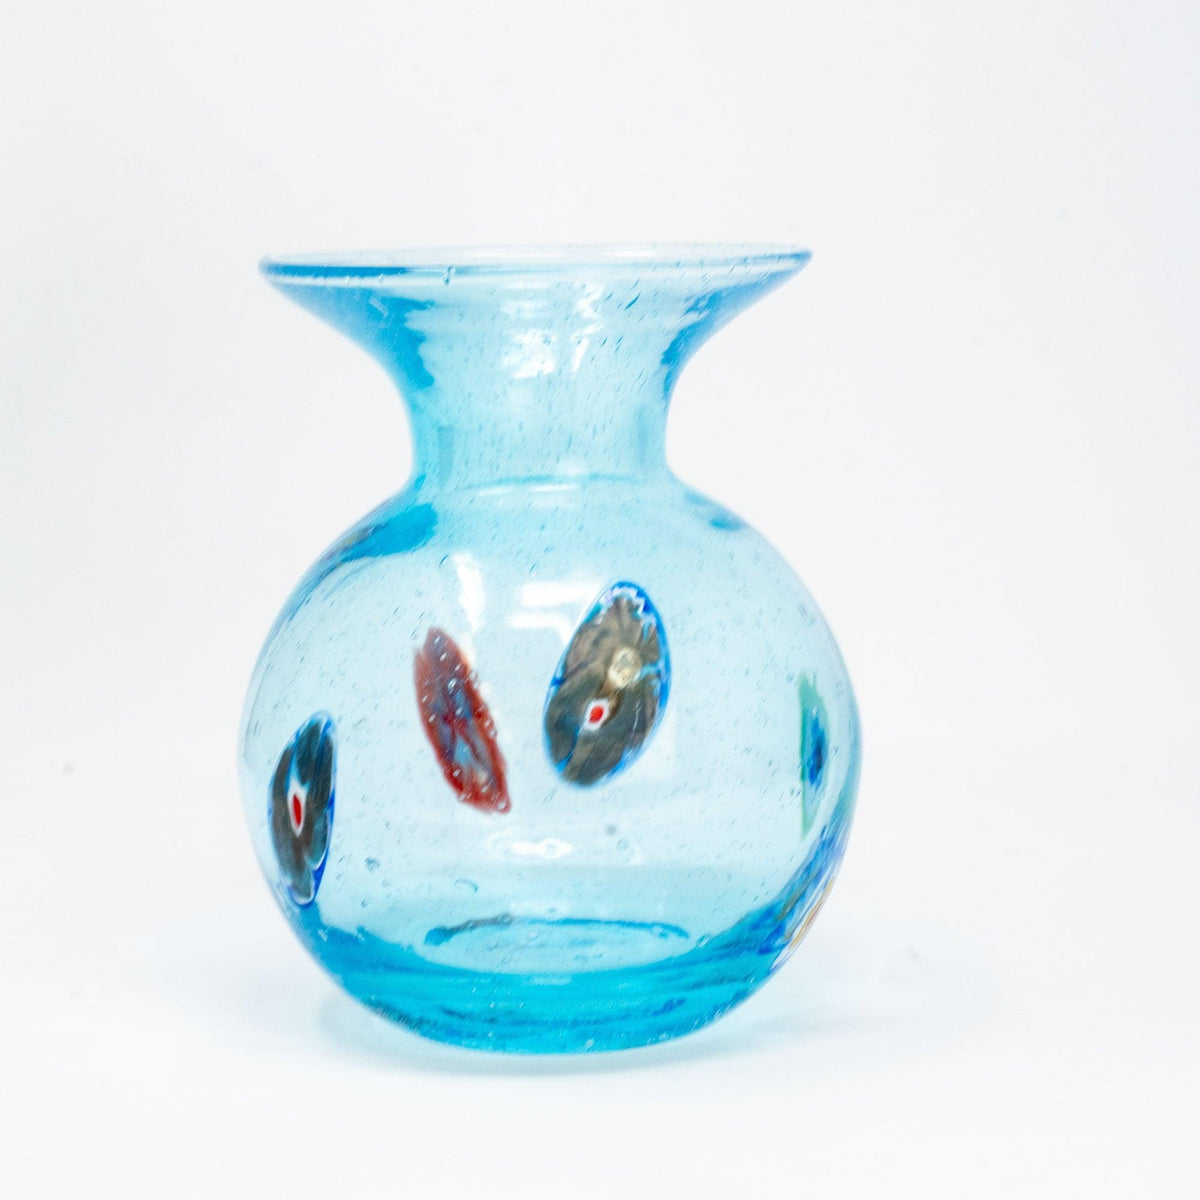 Calla Lily Glass Vase with Millefiori Accents - MyItalianDecor